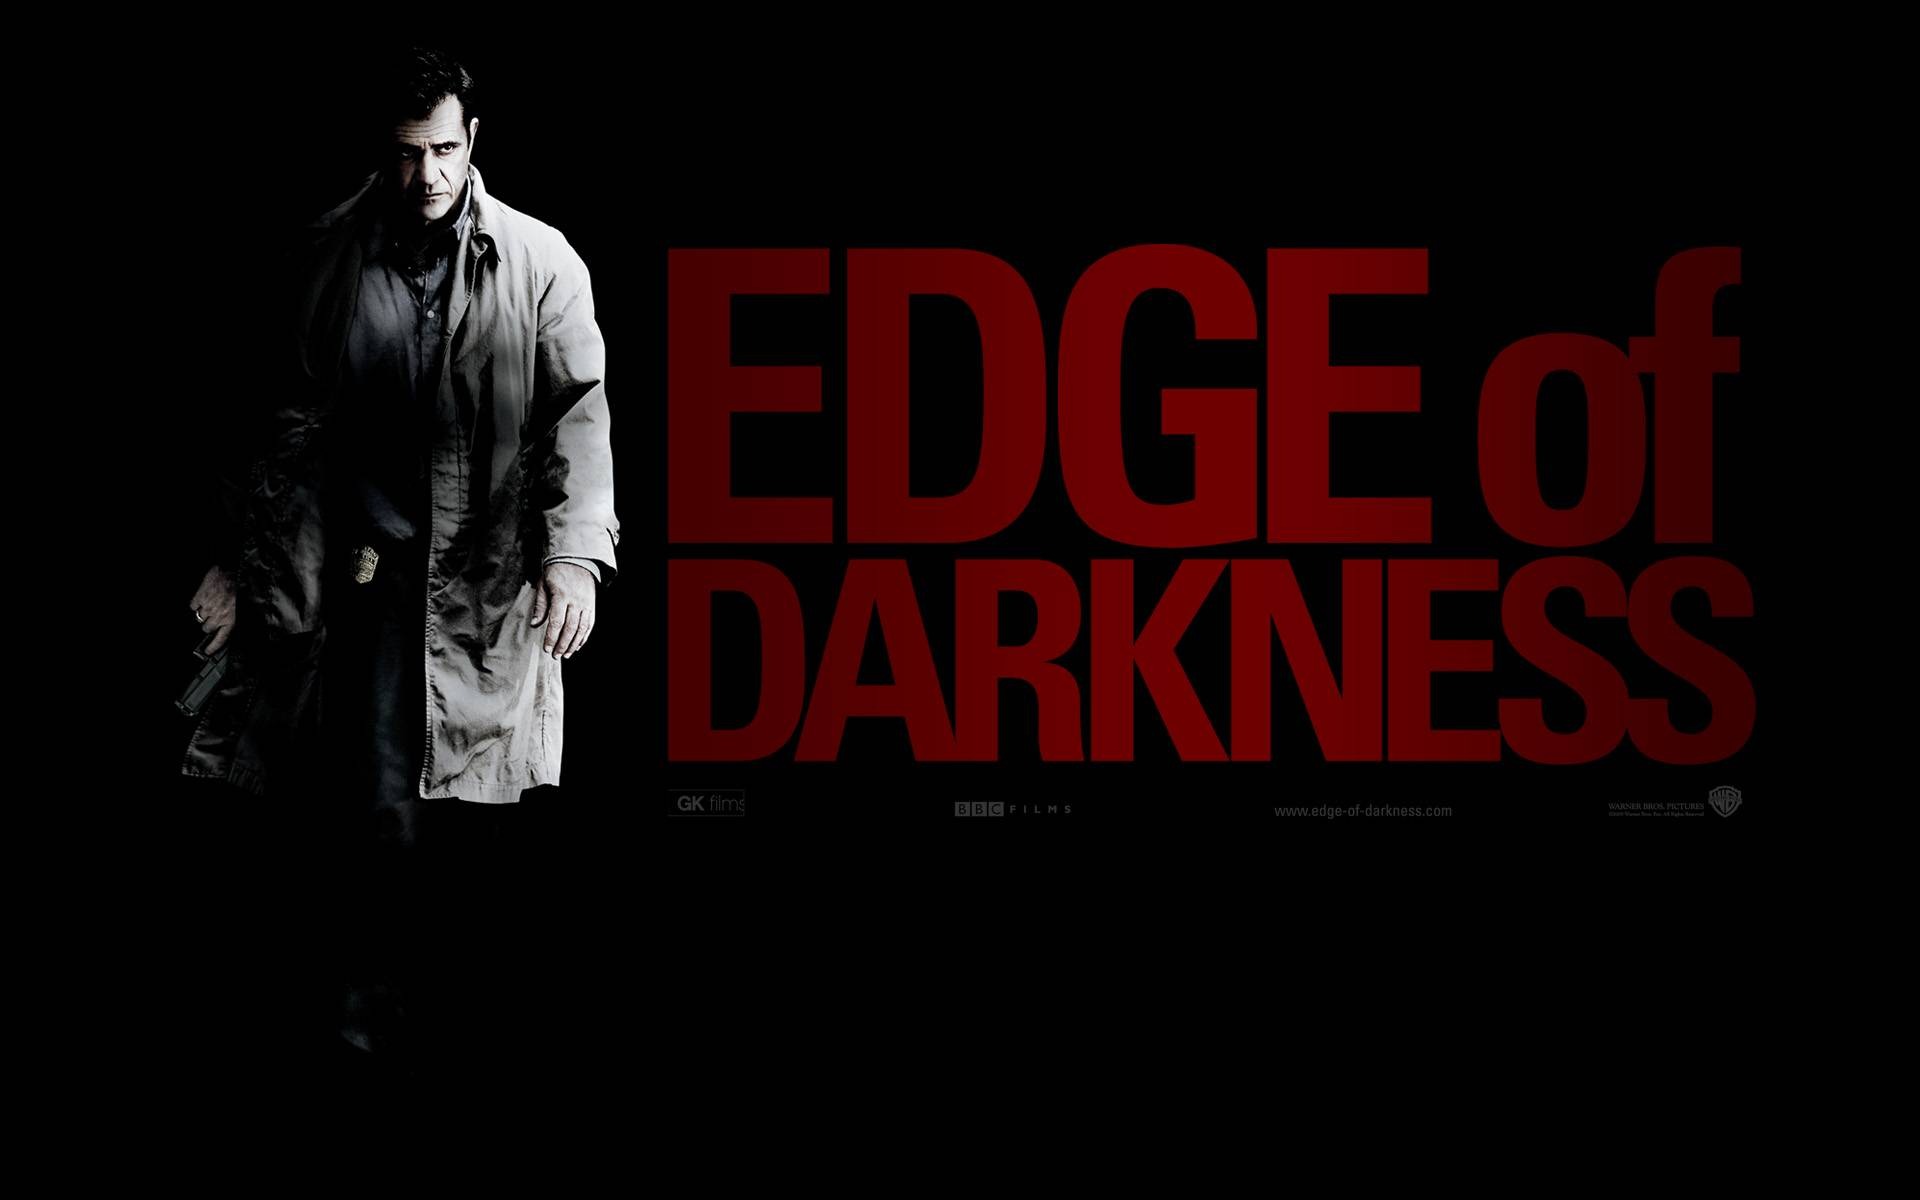 Edge of Darkness HD papel tapiz #22 - 1920x1200